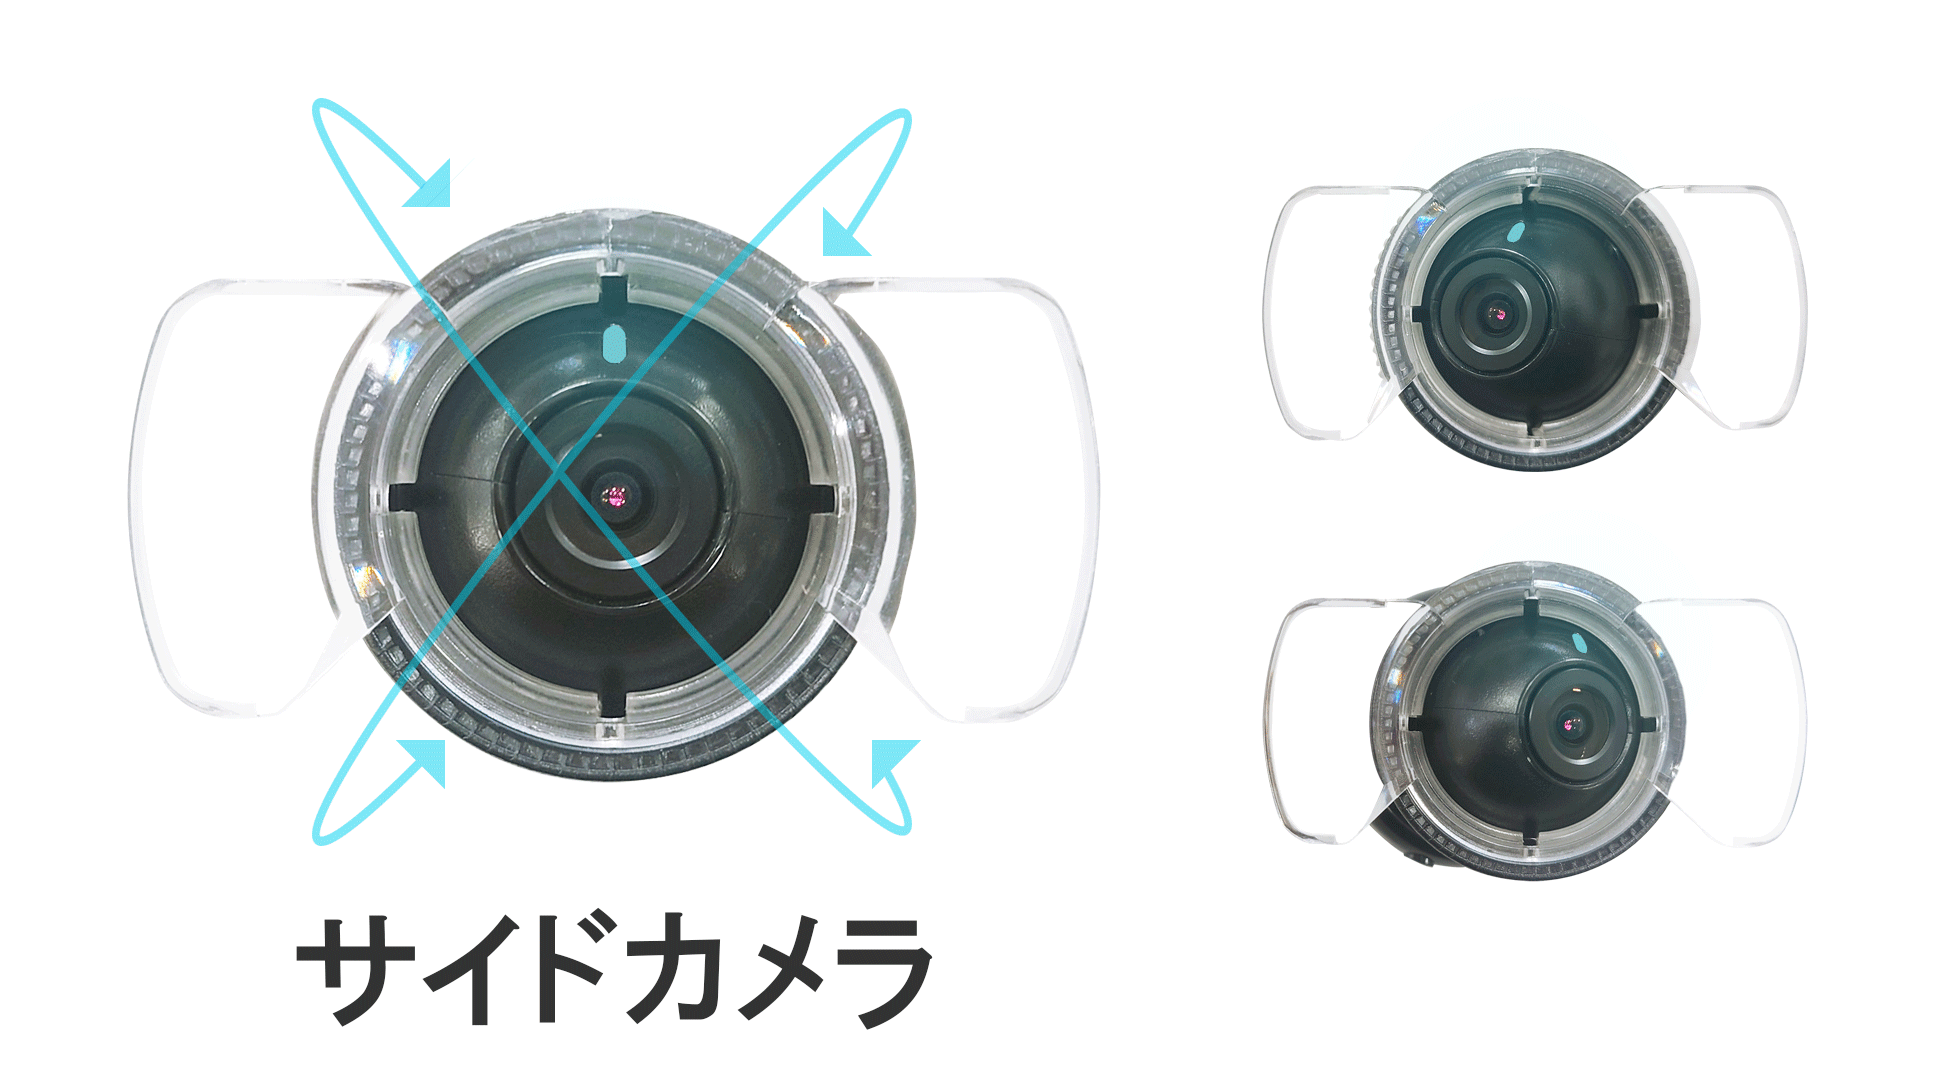 カメラの向きは設置後も変えられます。サイドカメラの向けられるレンズの向き